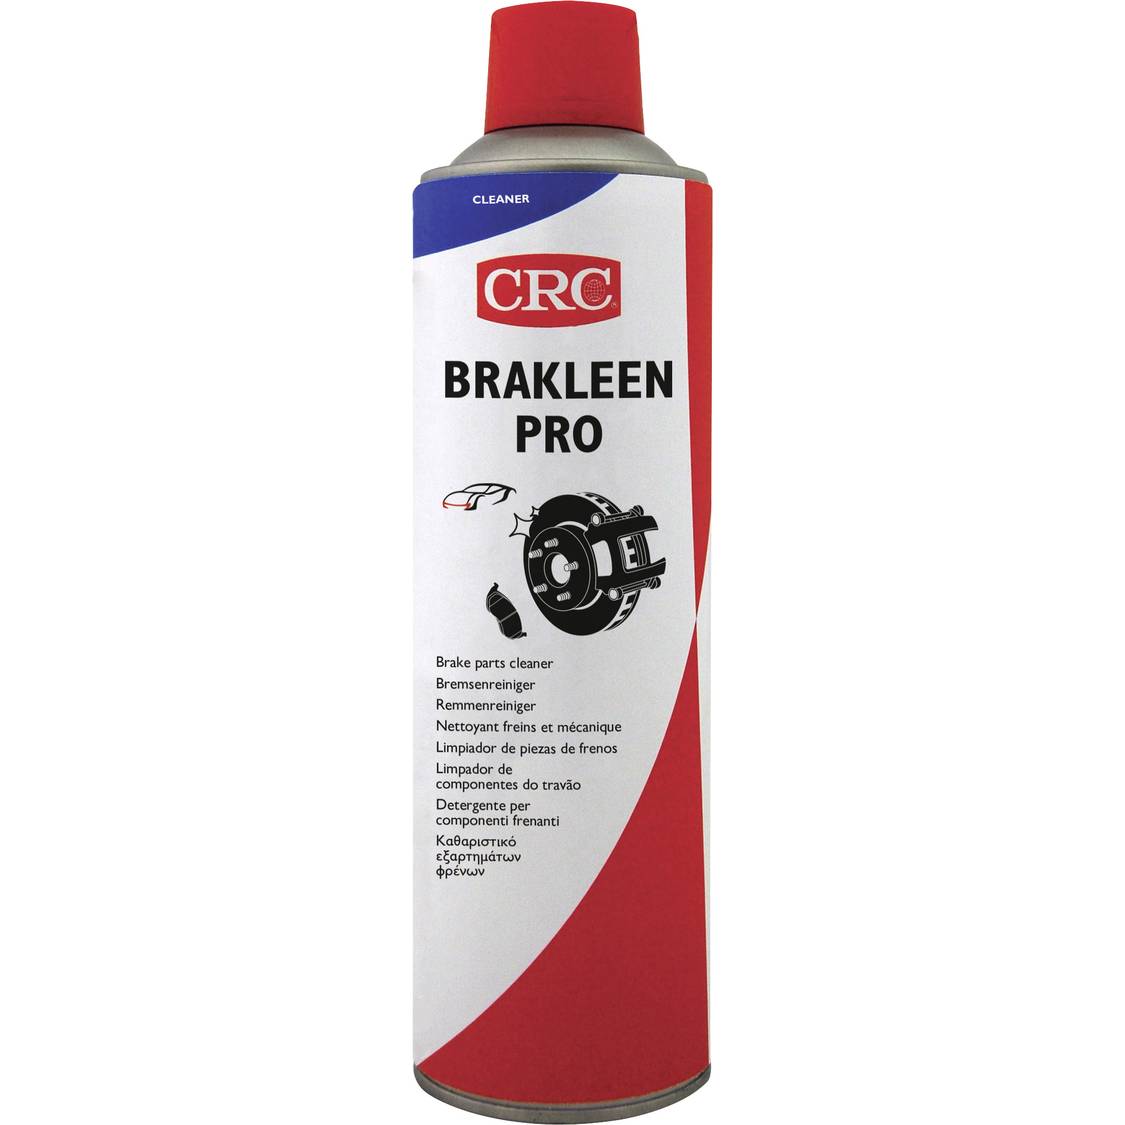 CRC BRAKLEEN PRO 32694-DE Bremsenreiniger 500 ml kaufen